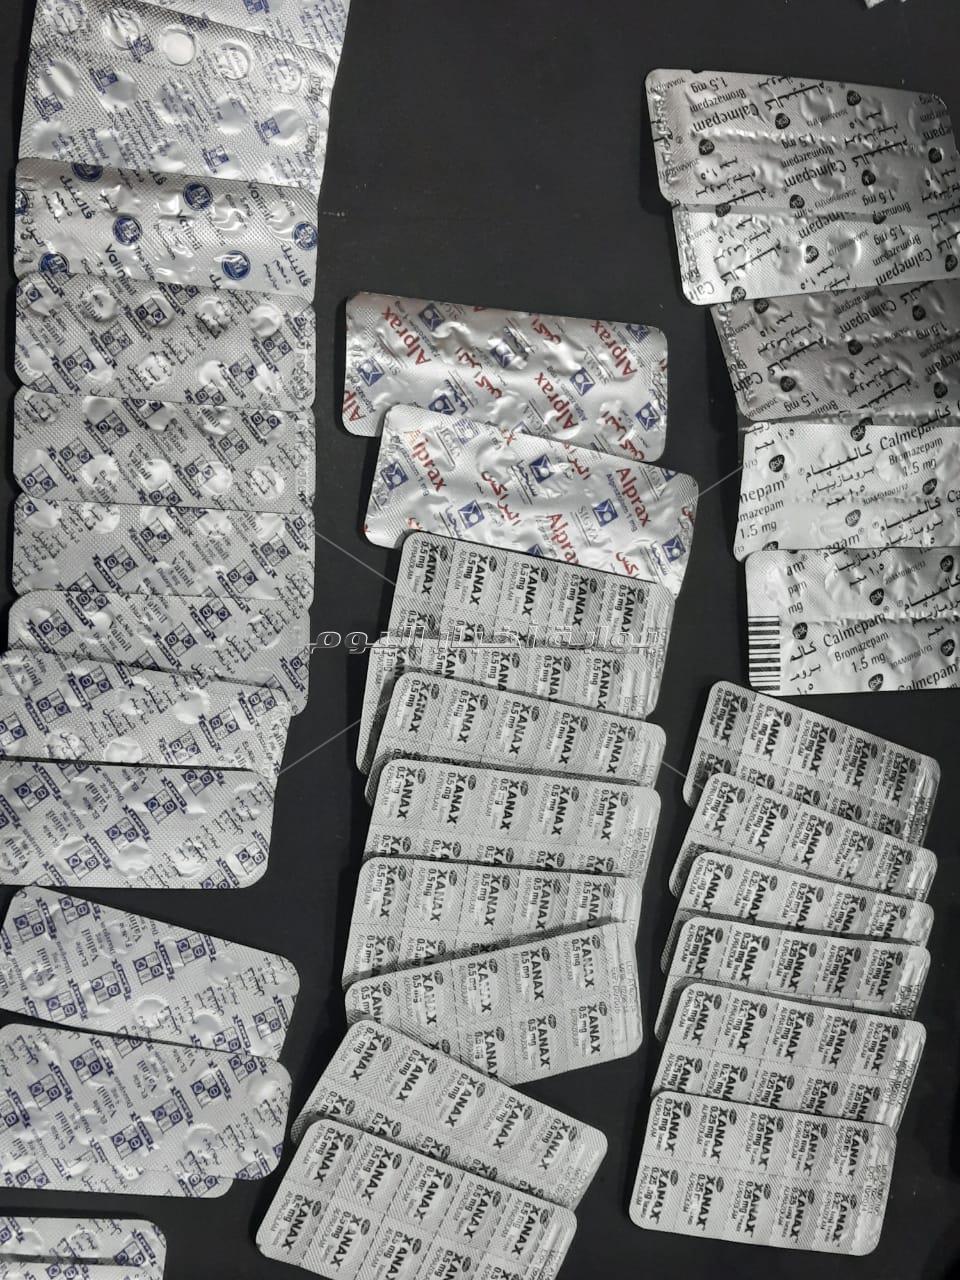 ضبط كمية كبيرة من مخدر الترامادول داخل صيدلية شهيرة بالقاهرة 